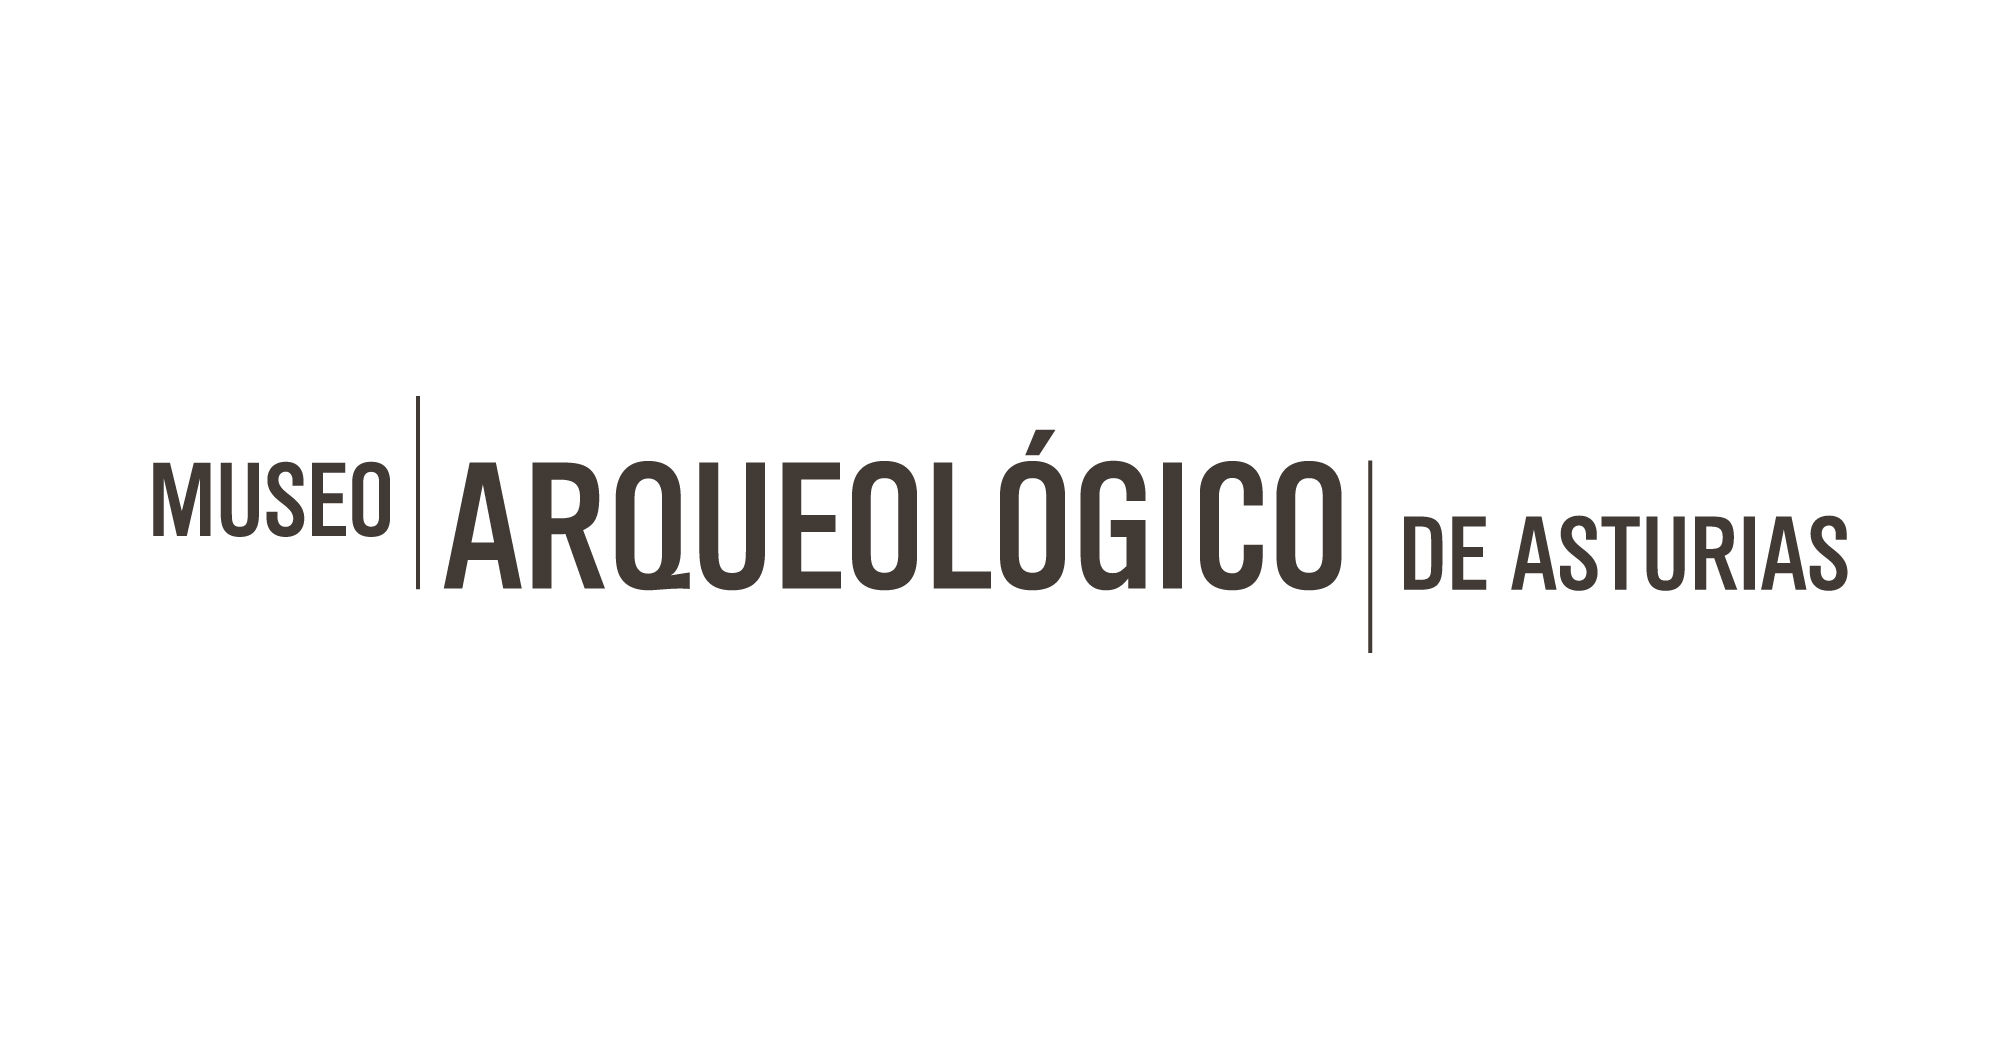 jorge_lorenzo_museo_arqueologico_asturias_03